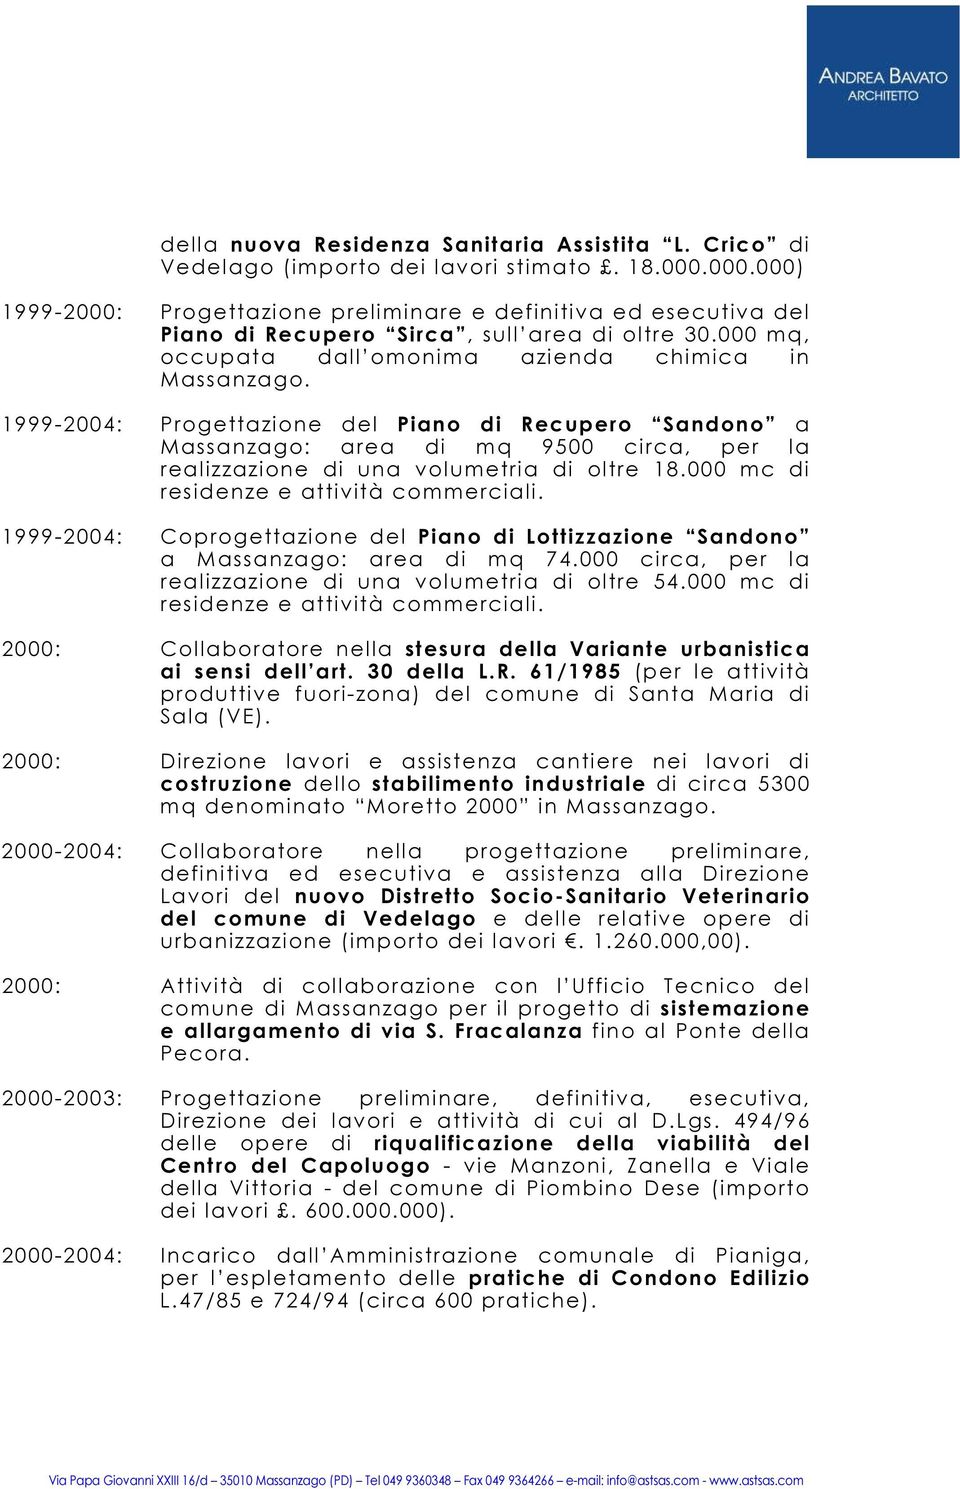 1999-2004: Progettazione del Piano di Recupero Sandono a Massanzago: area di mq 9500 circa, per la realizzazione di una volumetria di oltre 18.000 mc di residenze e attività commerciali.